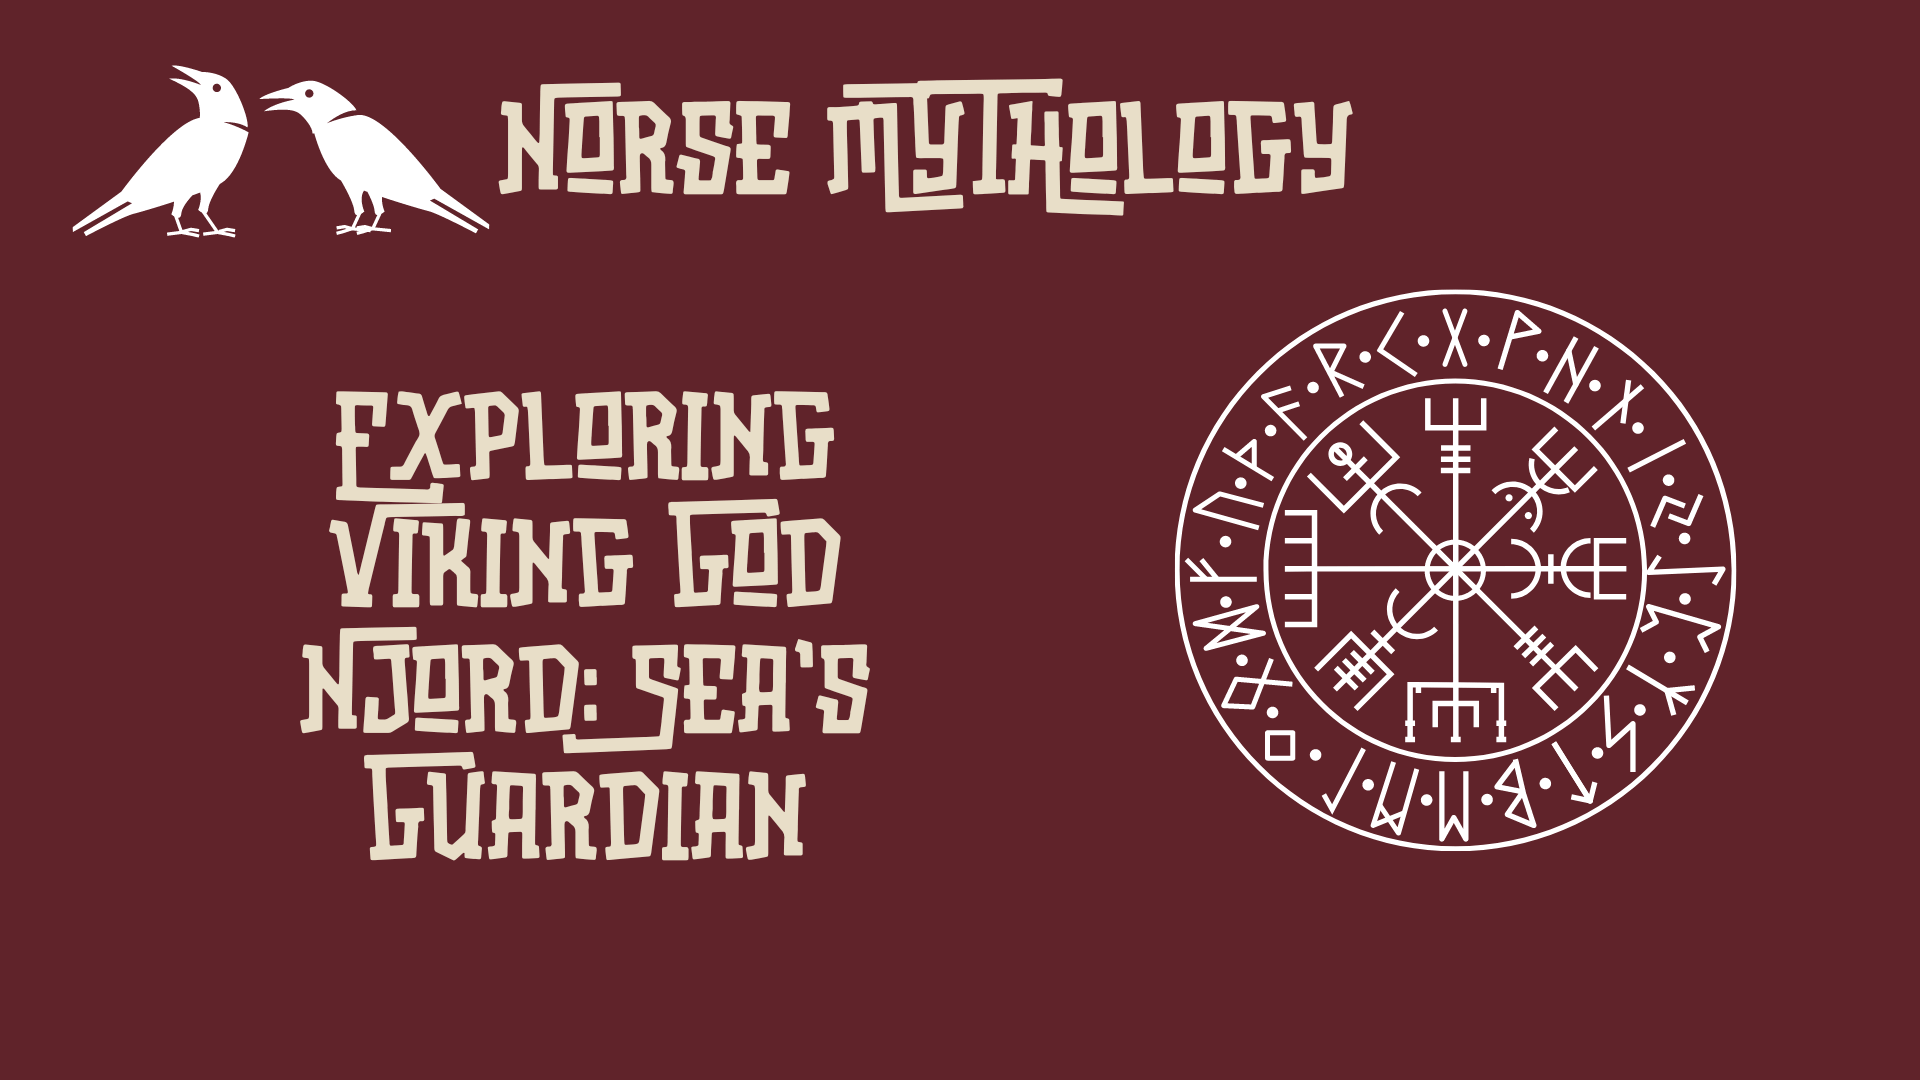 Exploring Viking God Njord: Sea's Guardian